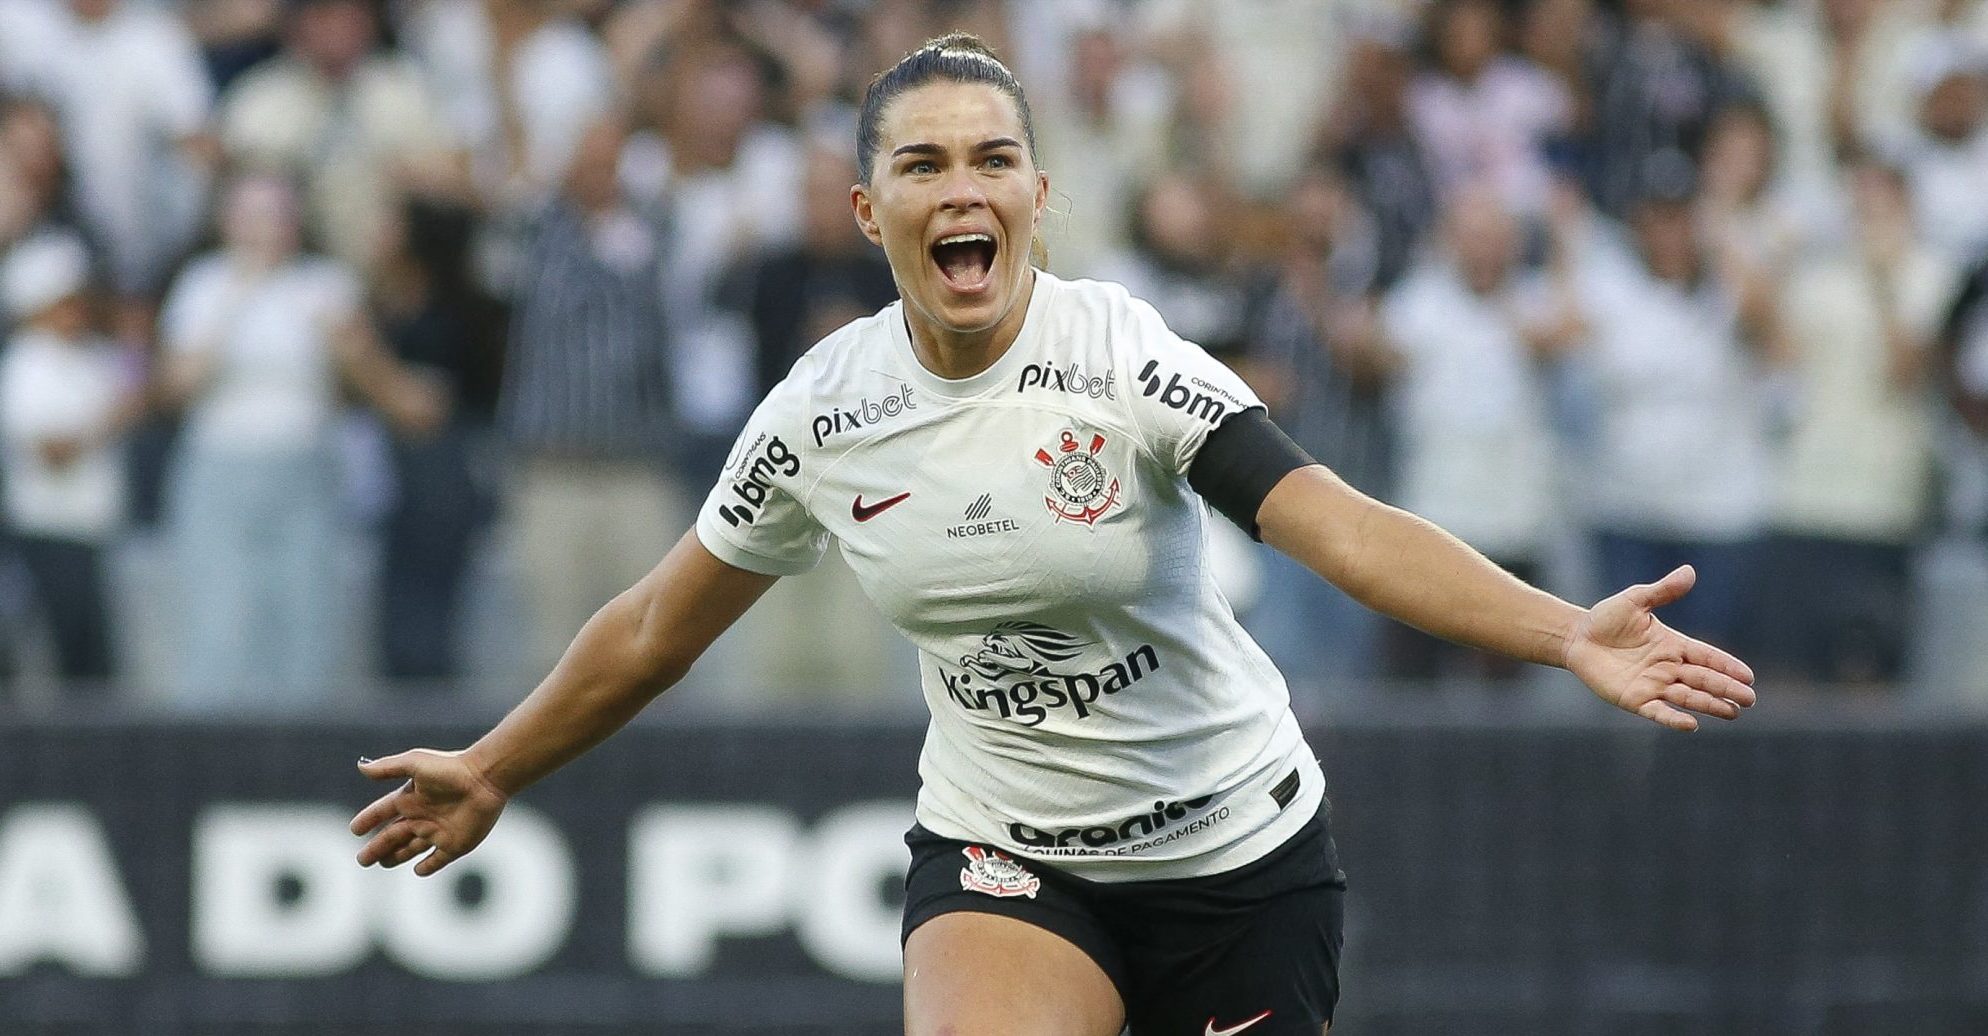 Jogos Perdidos: Grande goleada das meninas sub-17 do Corinthians no Parque